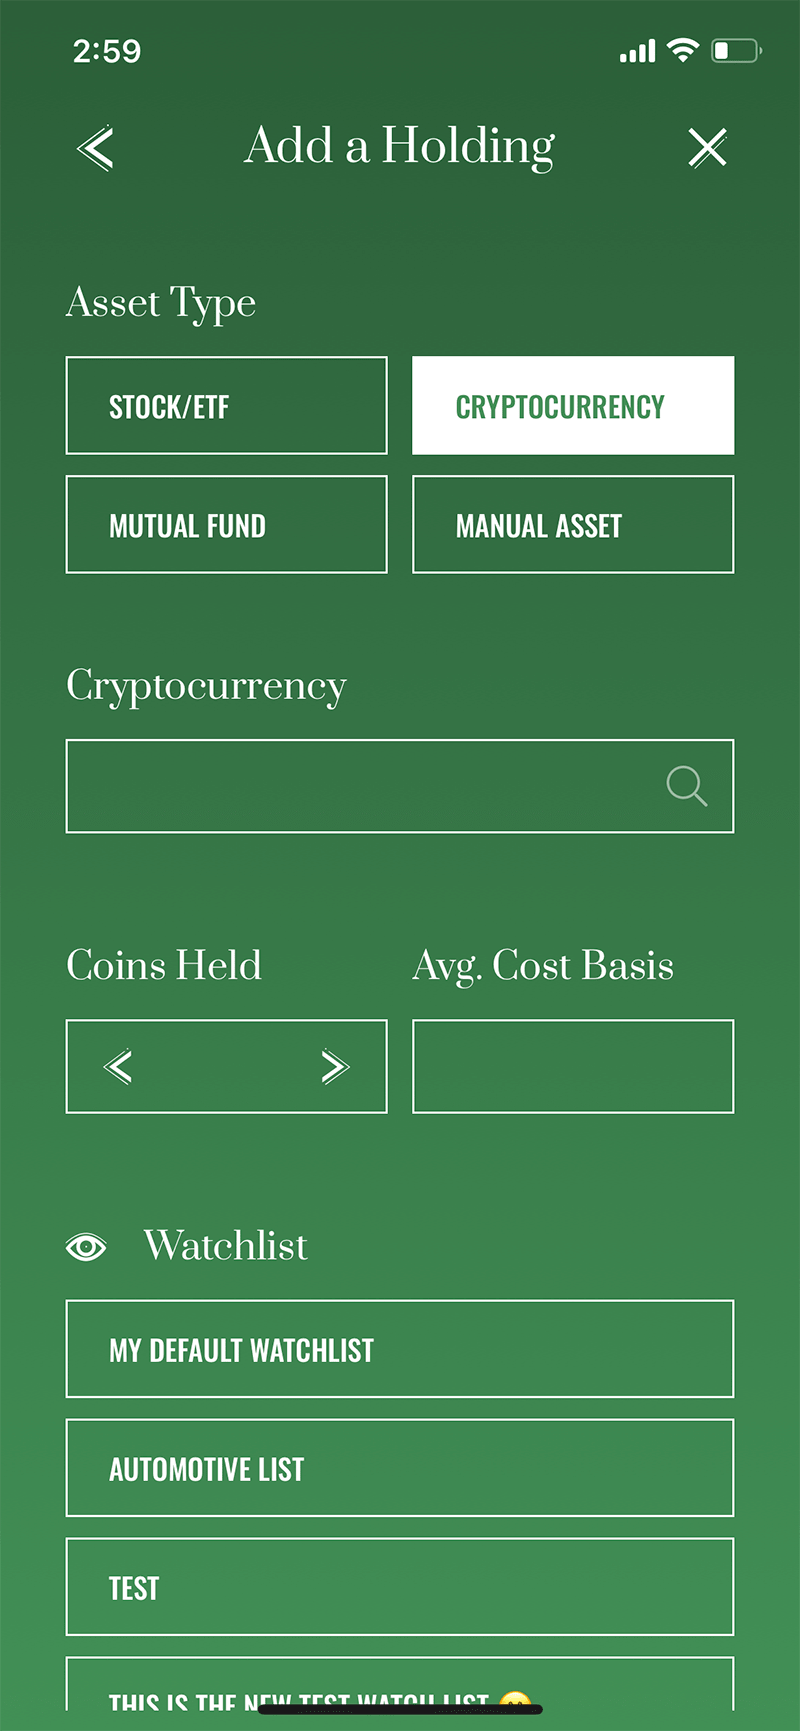 MarketBeat App Screenshot - Add A Holding